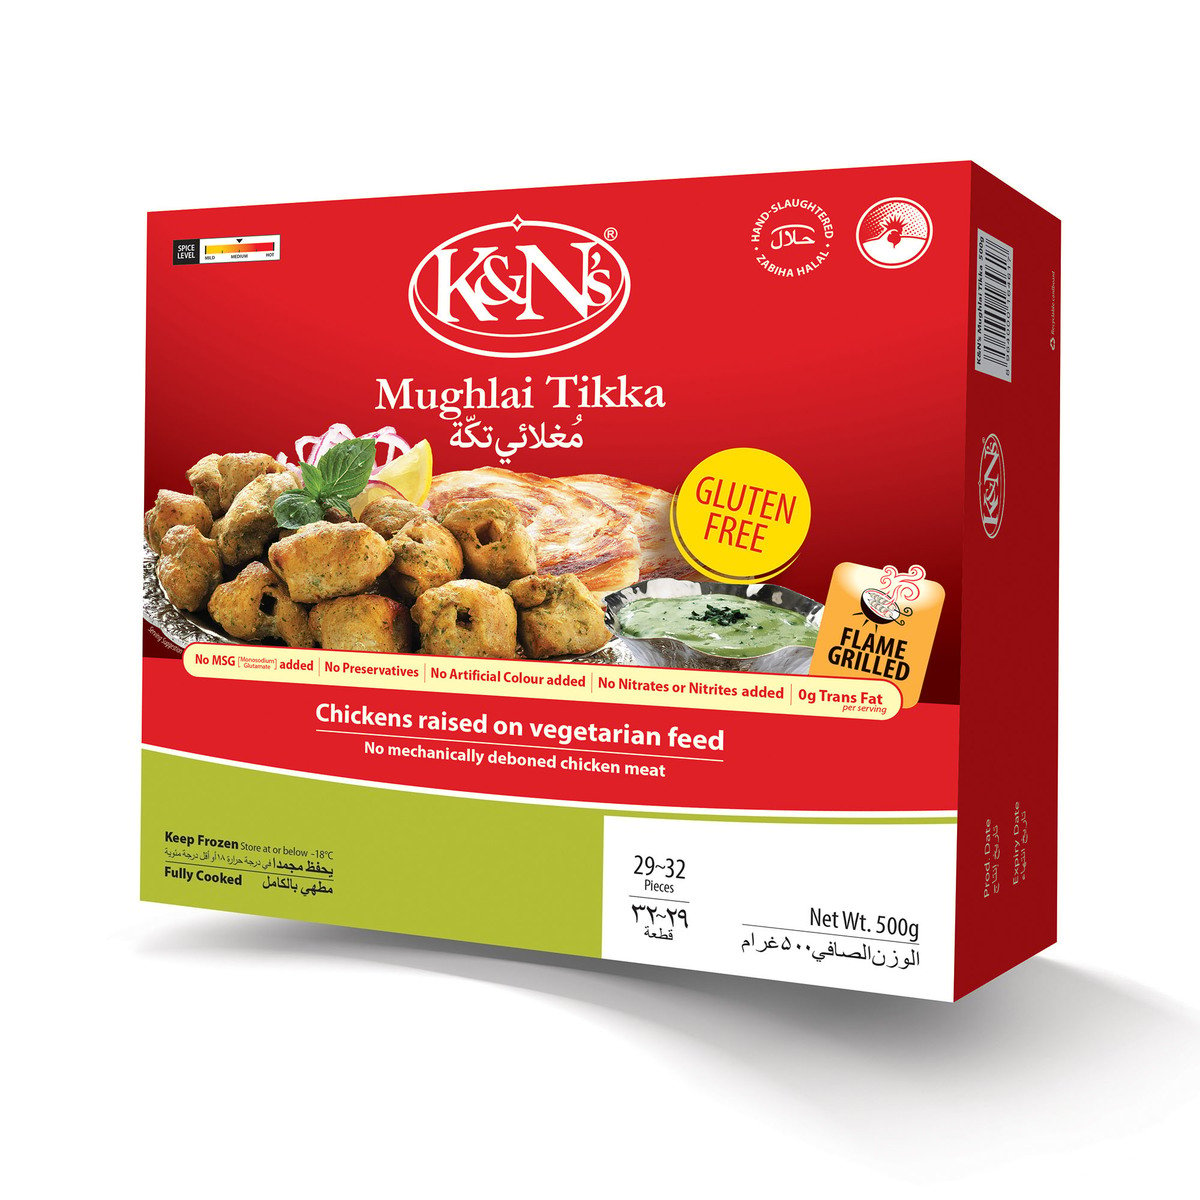 K&N's Chicken Mughlai Tikka 500 g